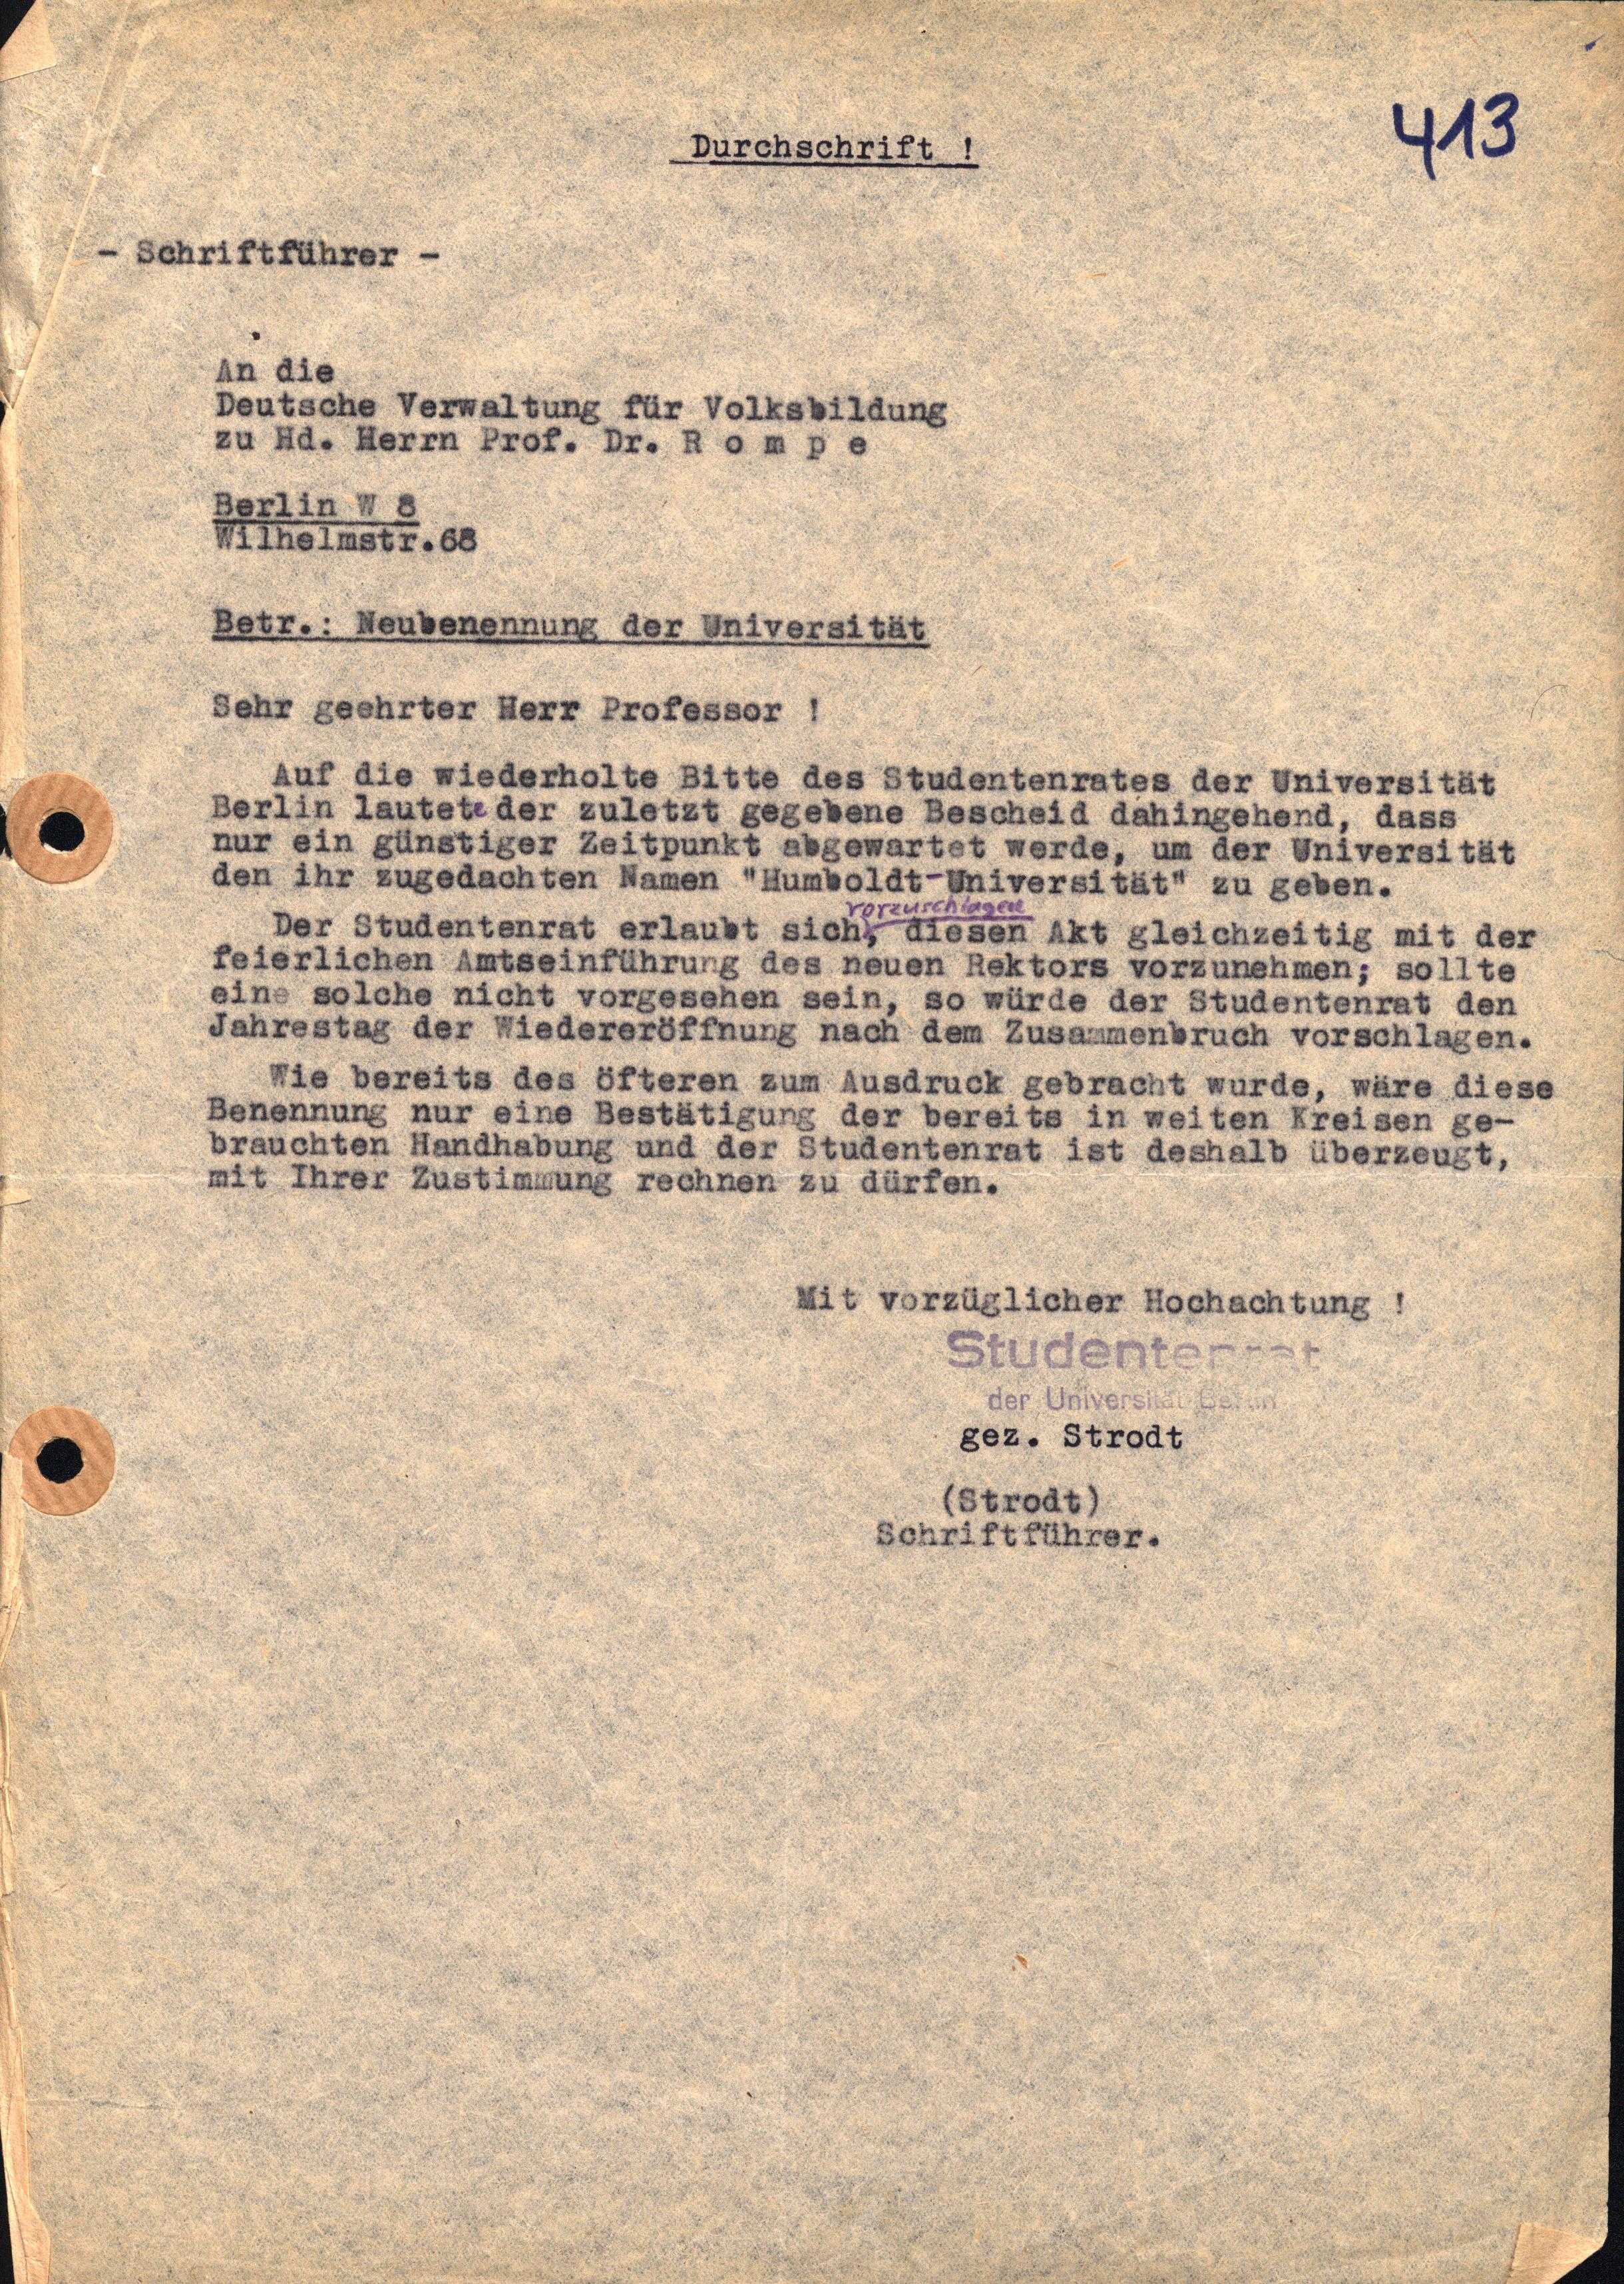 Studentenrat an die Deutsche Verwaltung für Volksbildung, 12.12.1947